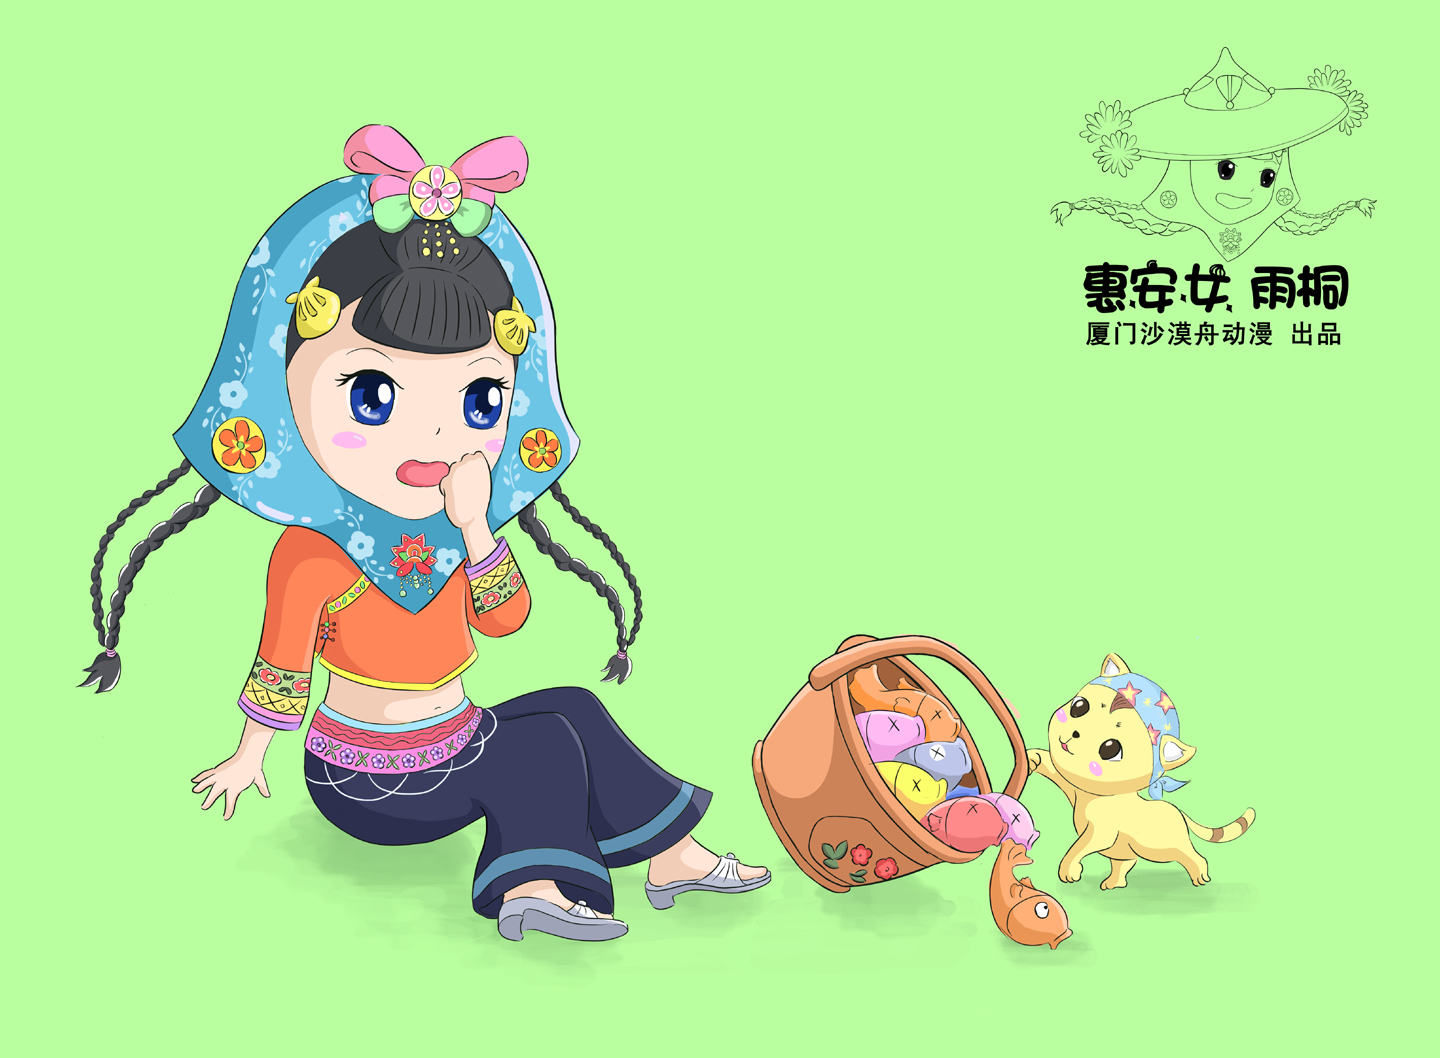 肖小月塑造的可爱惠安女形象~这卡通惠安小女孩叫雨桐,喜欢唱闽南儿歌